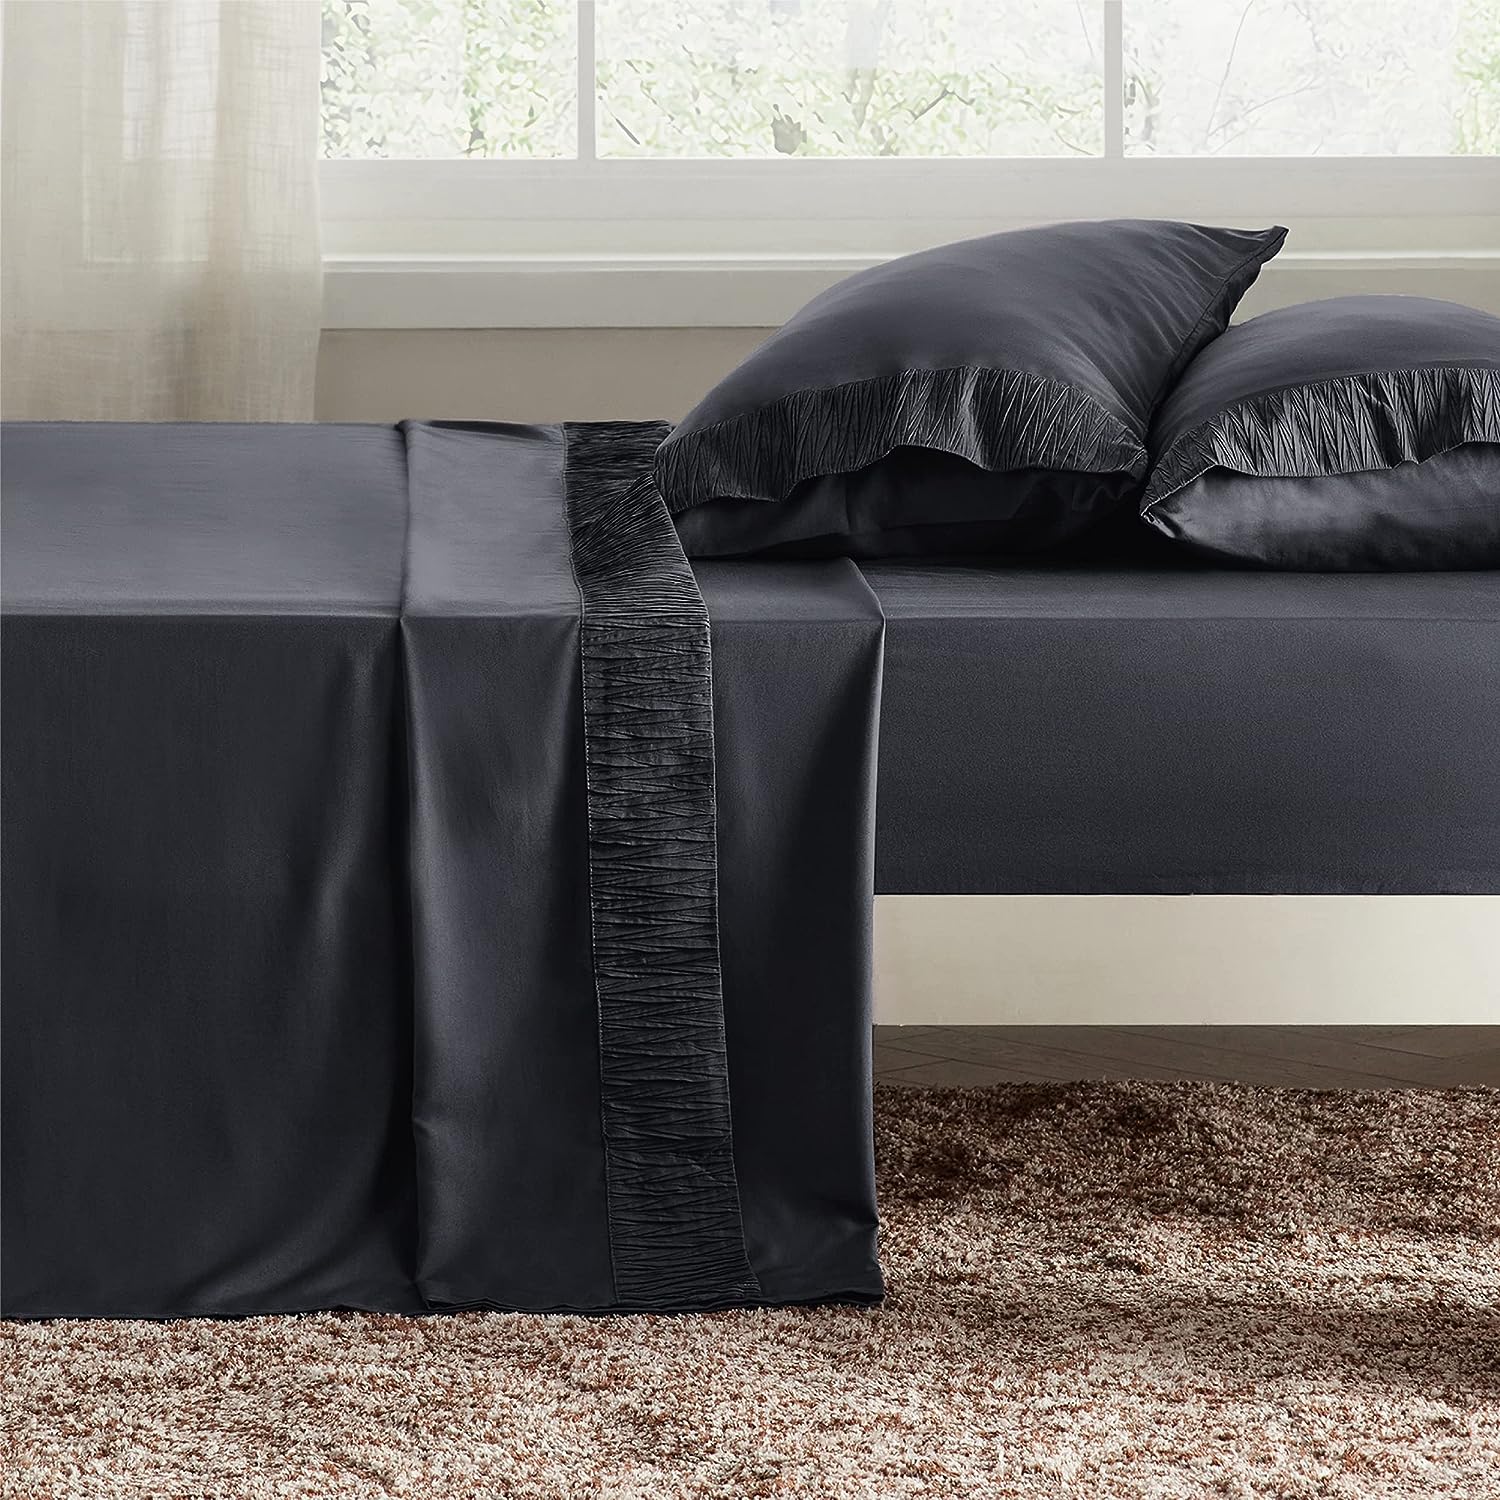 Bedsure Juego de sábanas para cama de tamaño Full, de color gris, suave juego